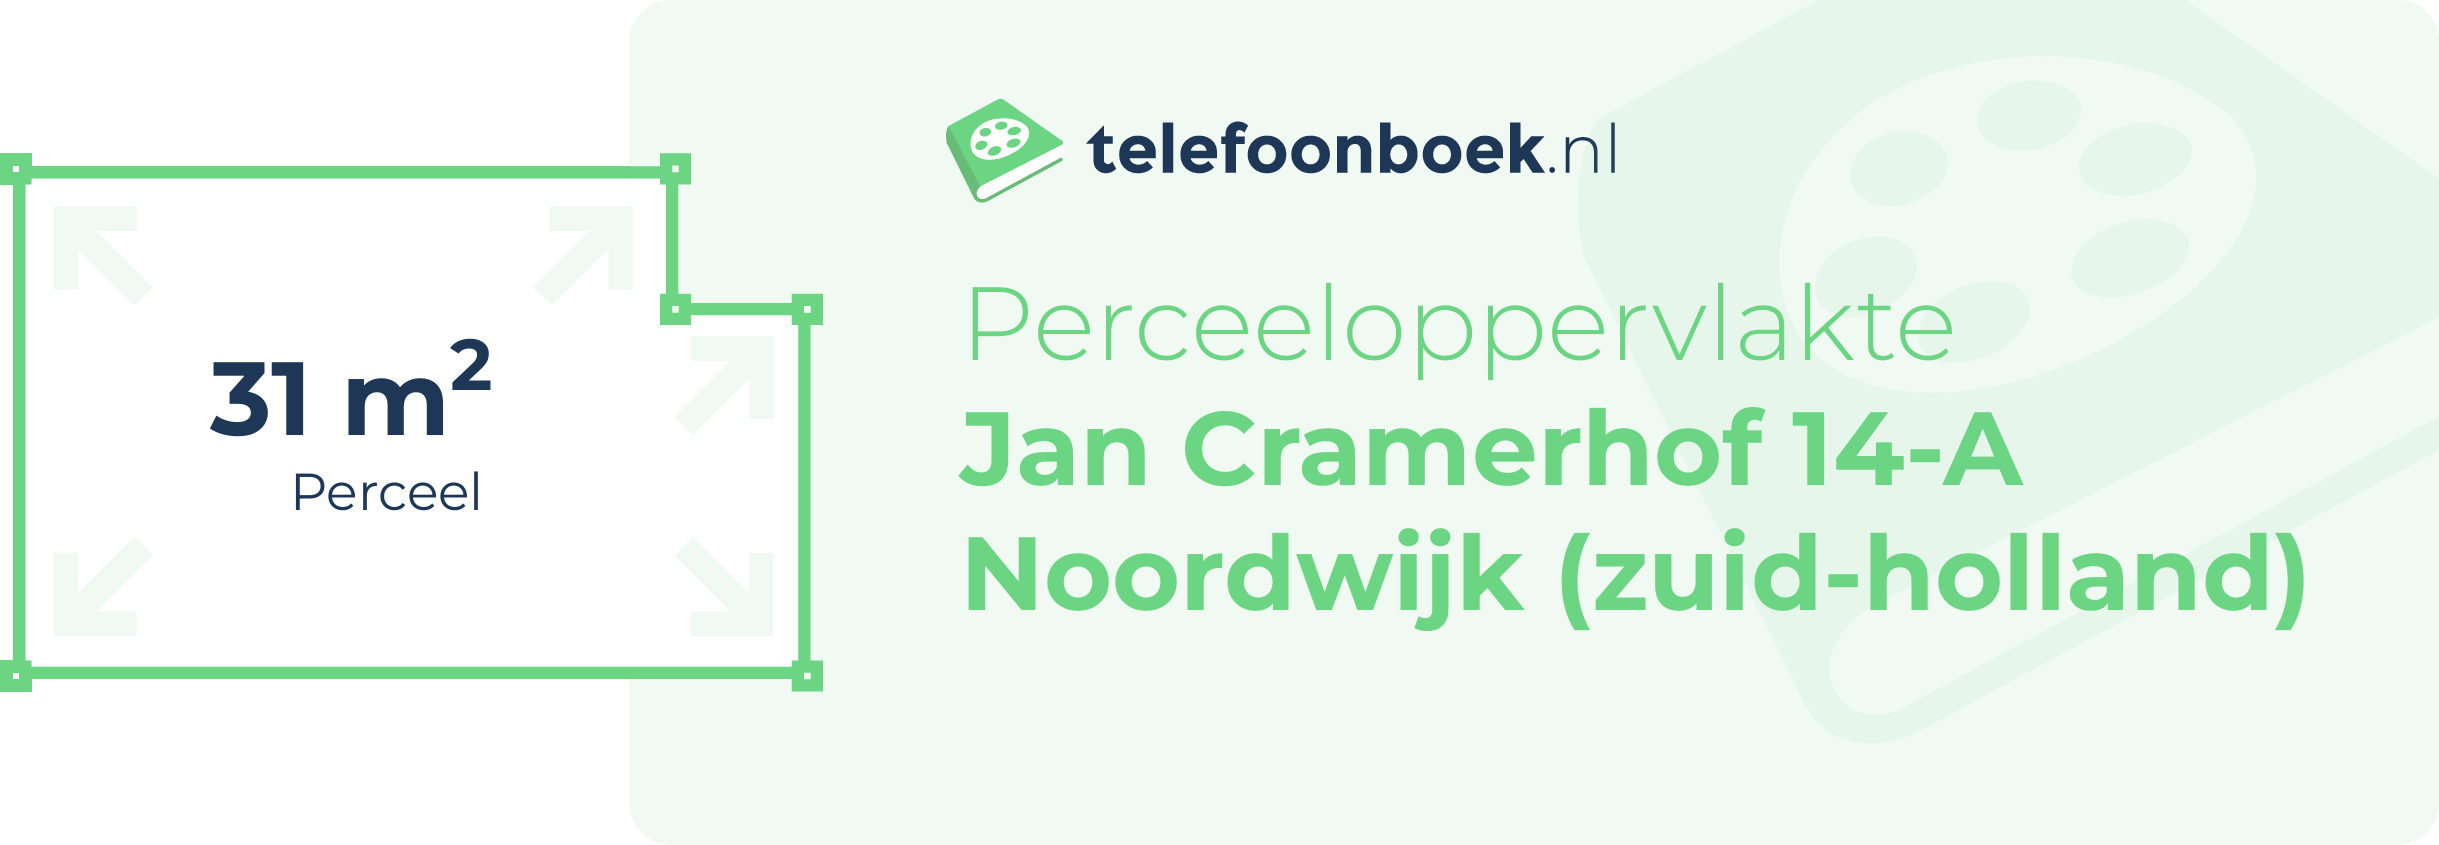 Perceeloppervlakte Jan Cramerhof 14-A Noordwijk (Zuid-Holland)